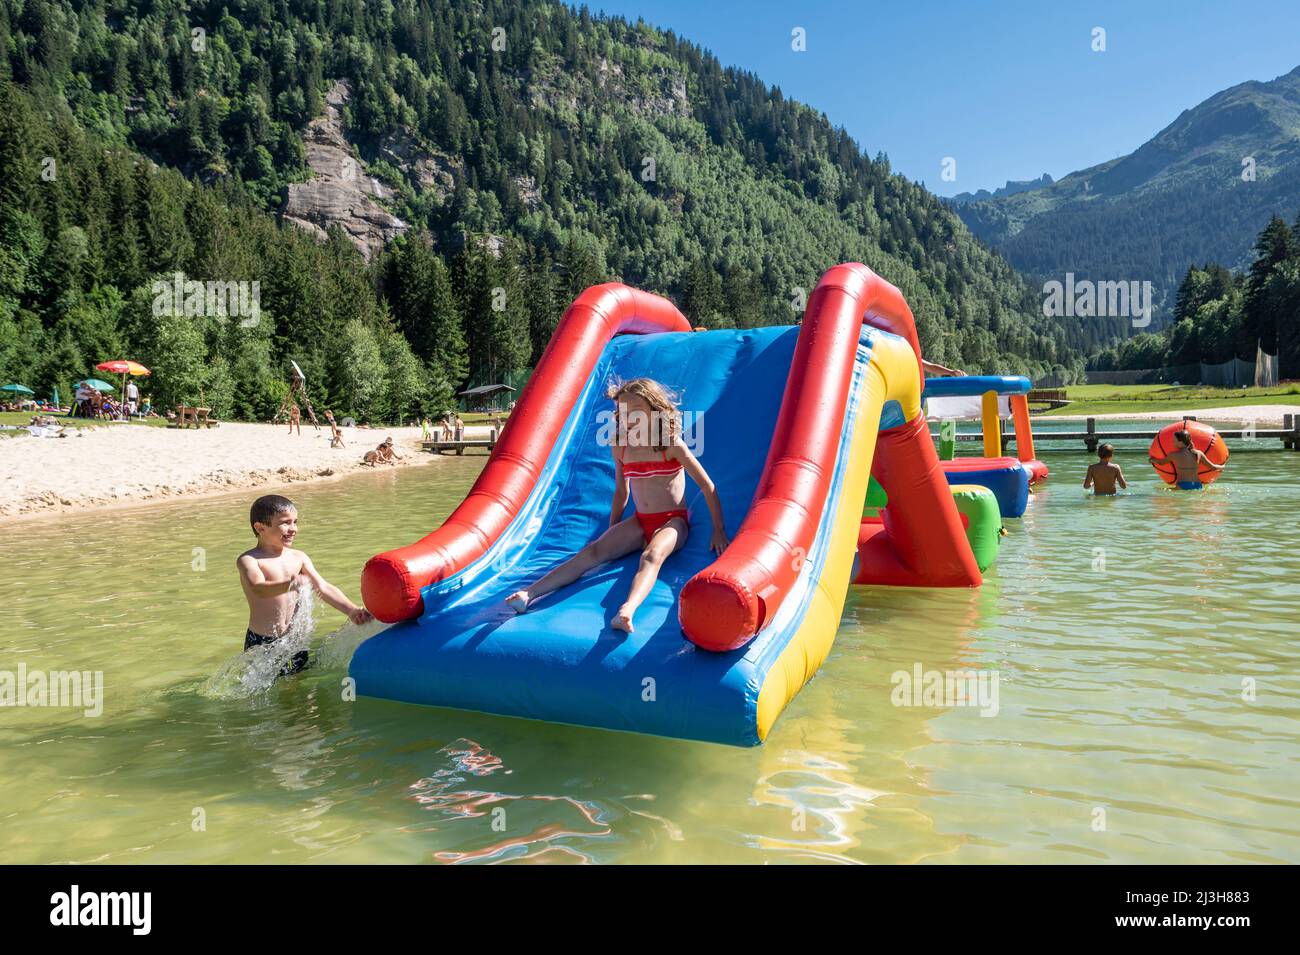 Francia, alta Savoia (74) massiccio del Monte Bianco , les Contamines Montjoie, parc de loisirs du Pontet, toboga gonflable dans le plan d'eau de baignade Foto Stock